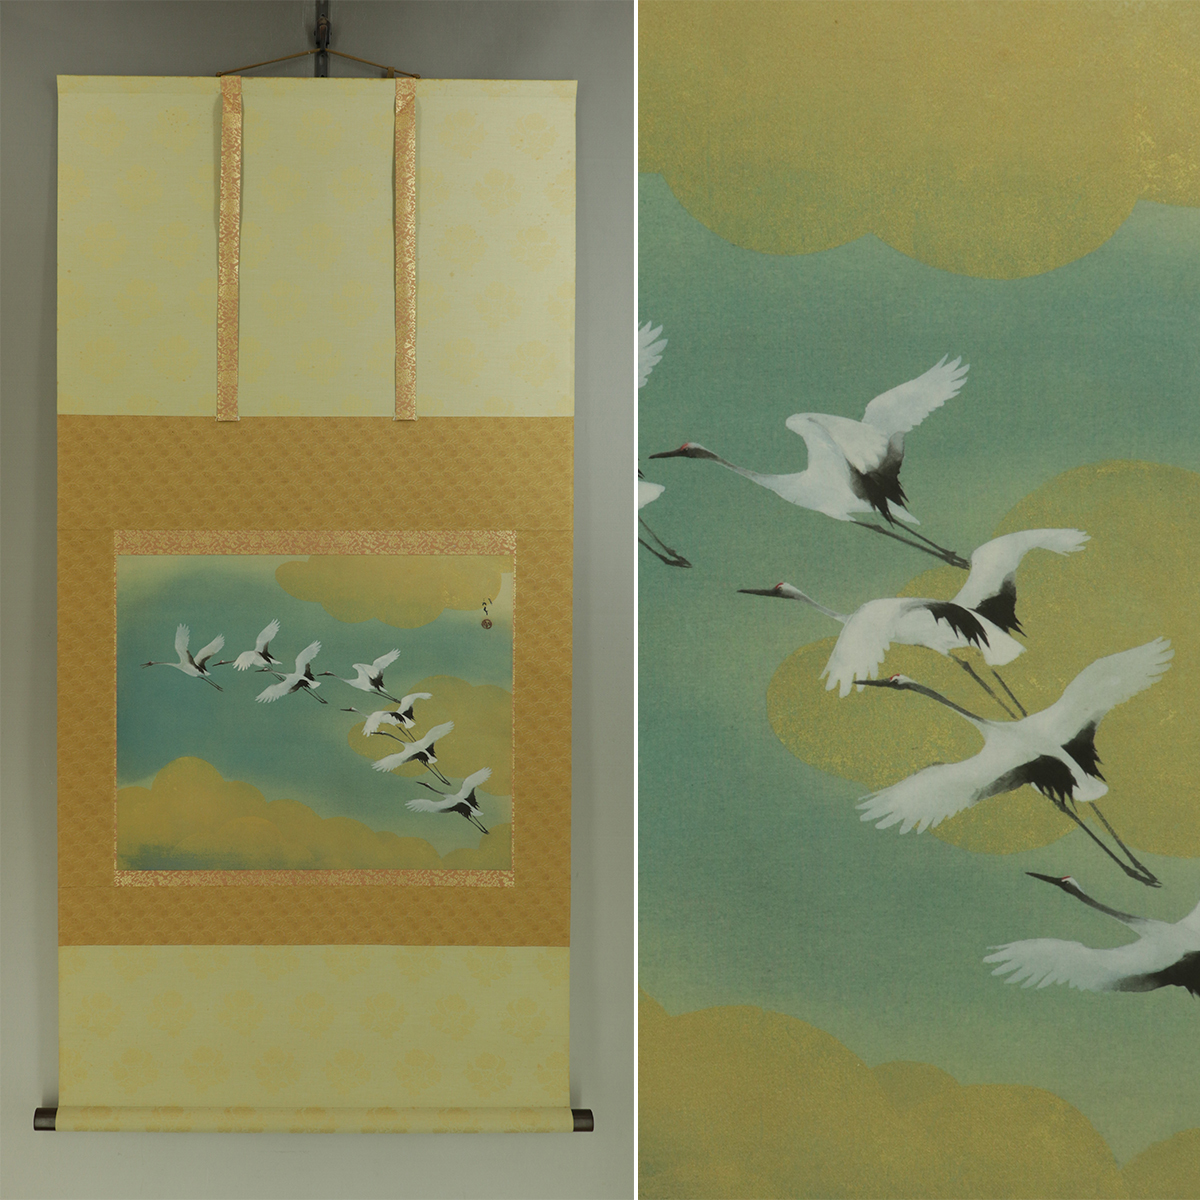 [Artisanat] Ryuko Kawabata [Comme un arc-en-ciel] ◆ Livre en soie ◆ Même boîte ◆ Parchemin suspendu u10094, peinture, Peinture japonaise, paysage, Fugetsu